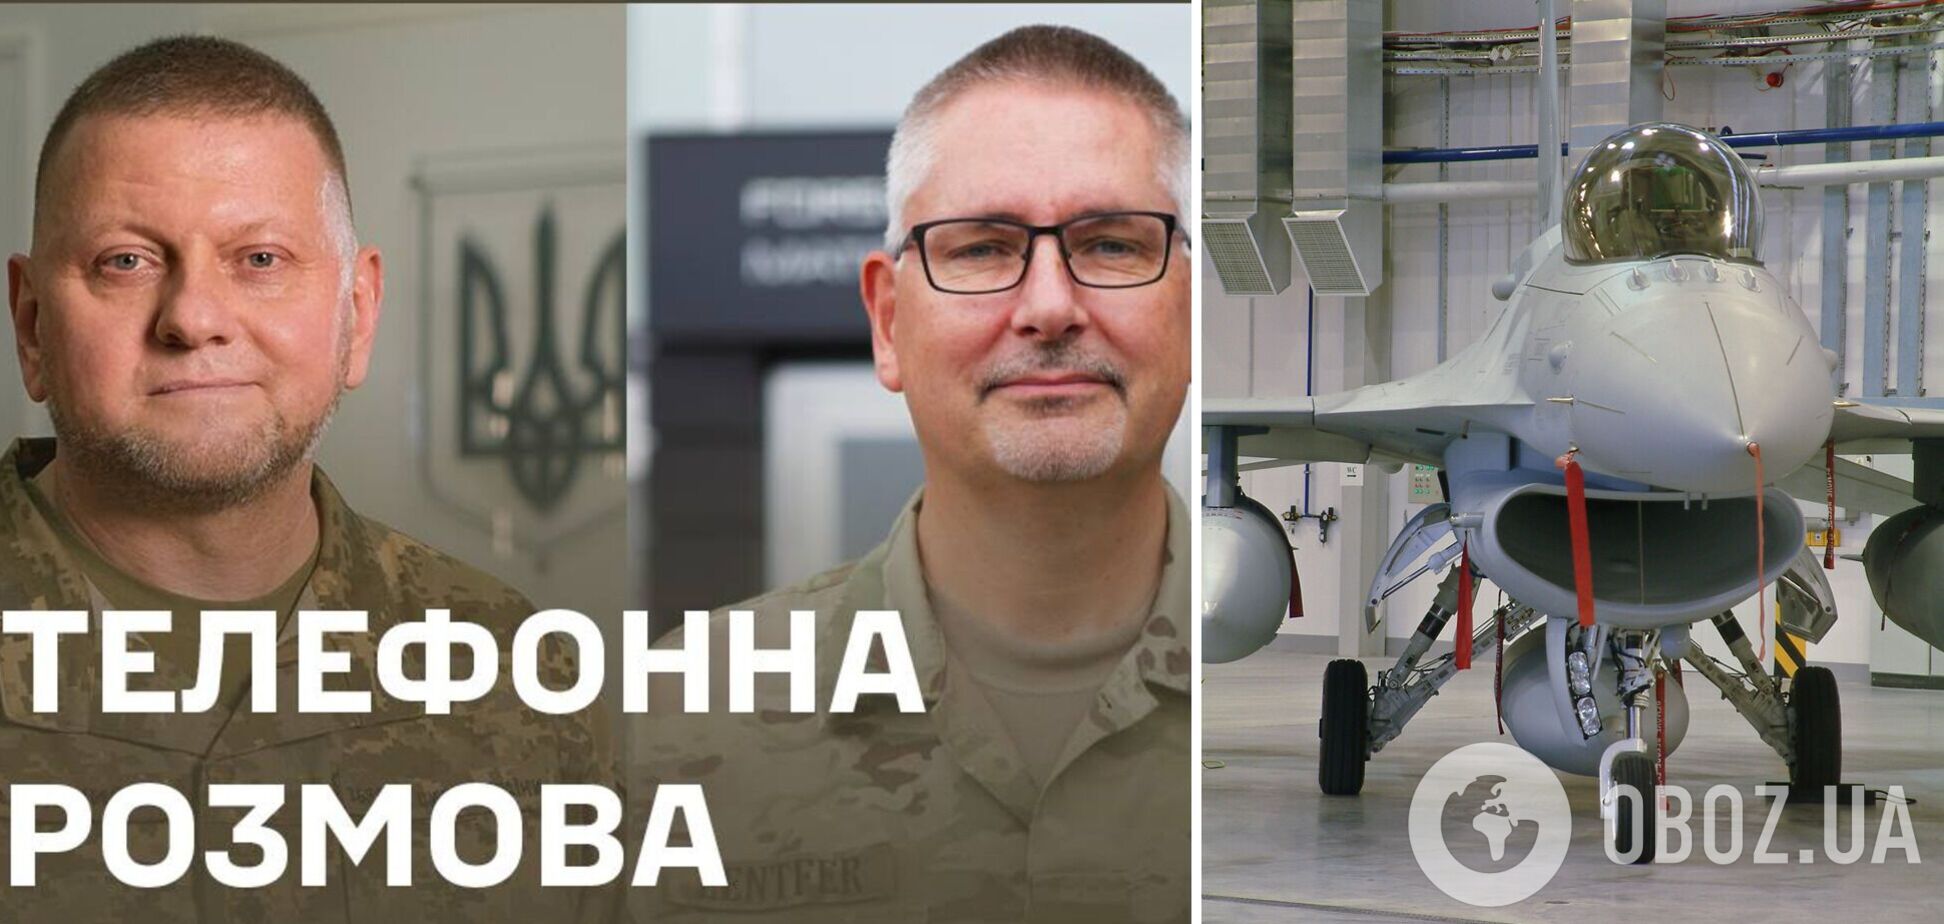 В фокусе – F-16: Залужный договорился с датским коллегой об обслуживании и ремонте истребителей в Украине